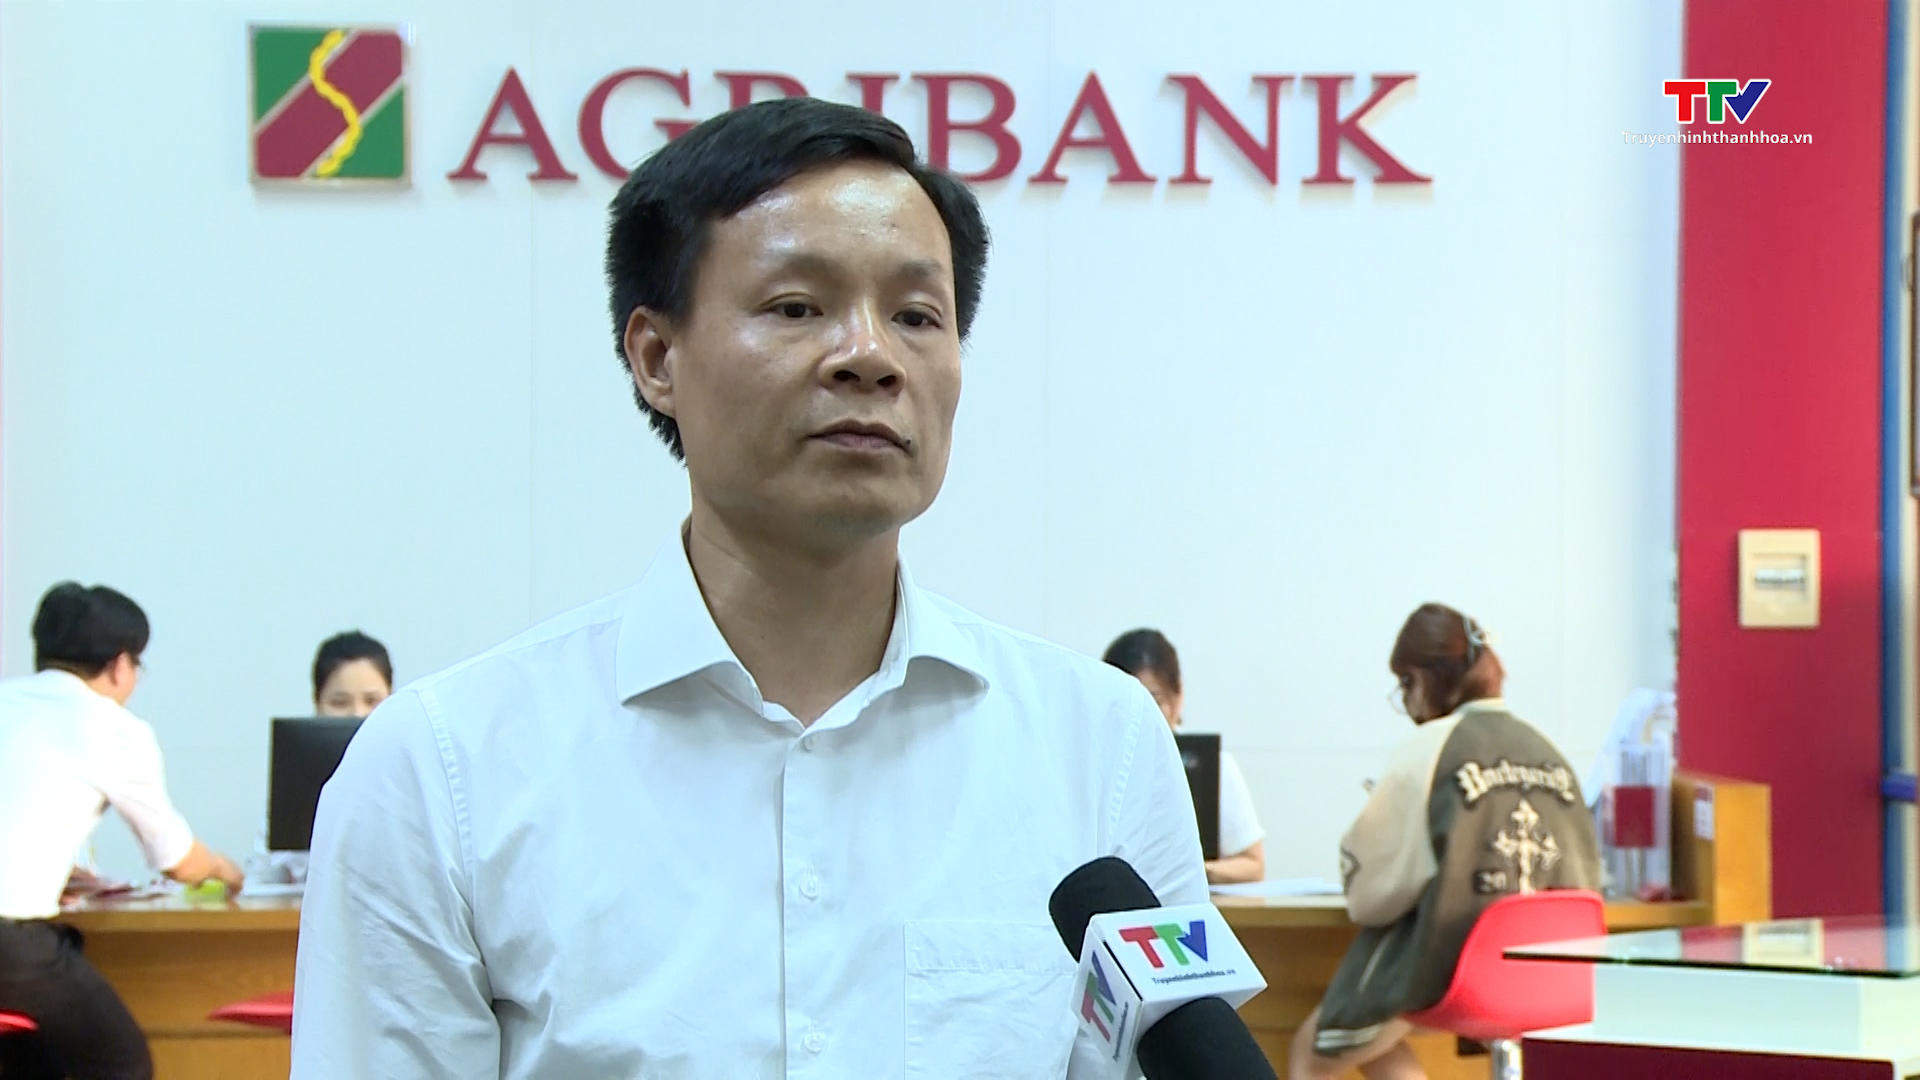 Agribank Thanh Hóa đẩy mạnh nghiên cứu khoa học, đổi mới sáng tạo để nâng cao hiệu quả hoạt động  - Ảnh 7.